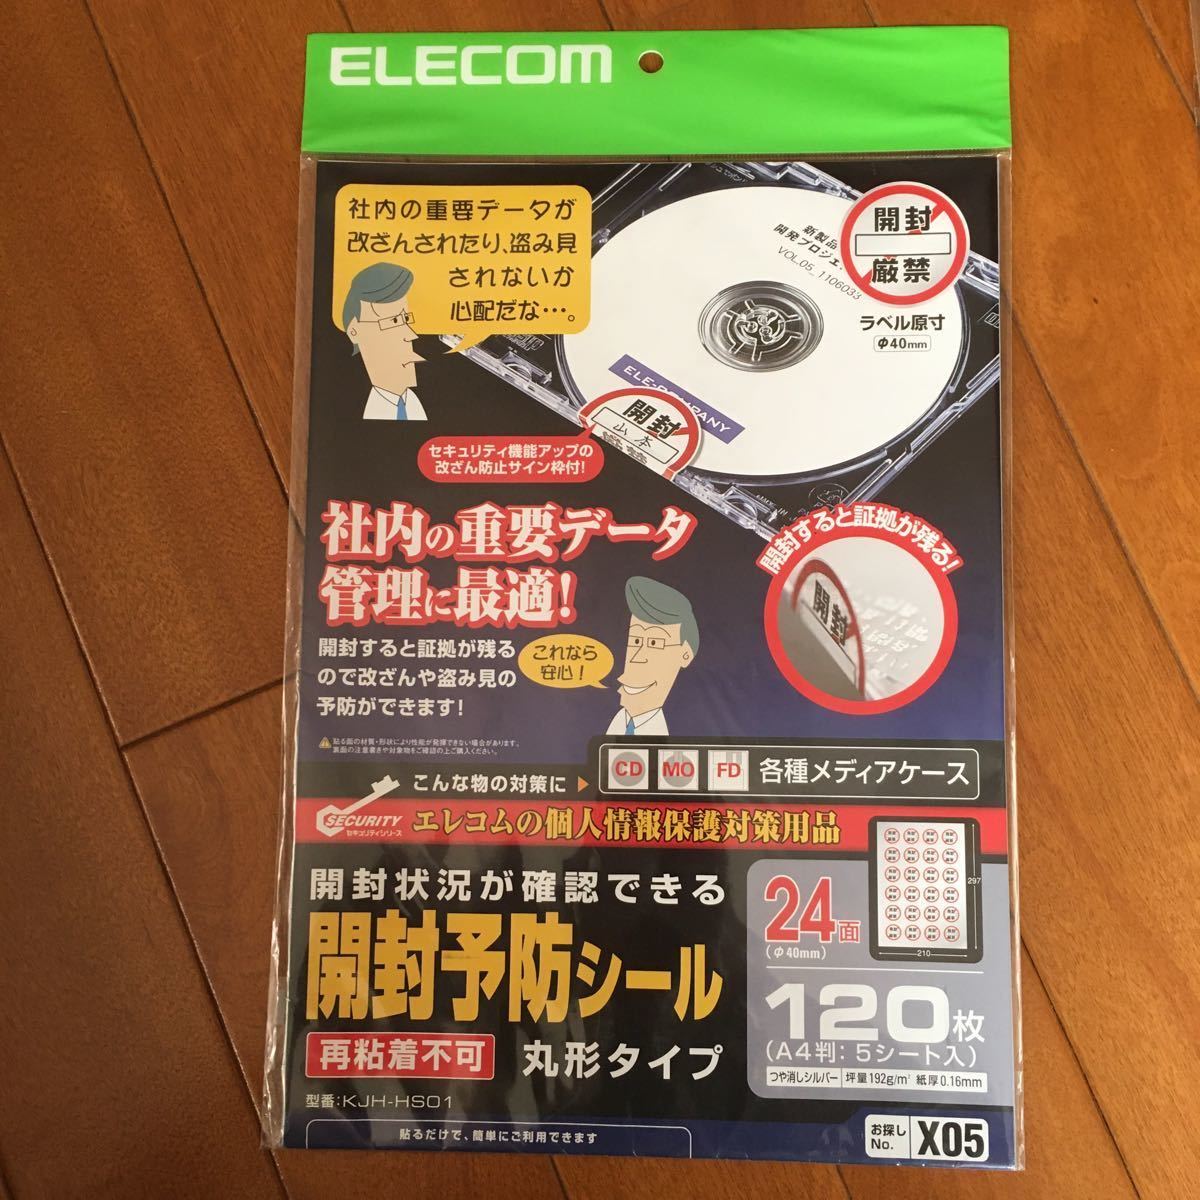 ELECOM Elecom вскрыть предотвращение наклейка система безопасности наклейка модифицировано .. предотвращение наклейка 